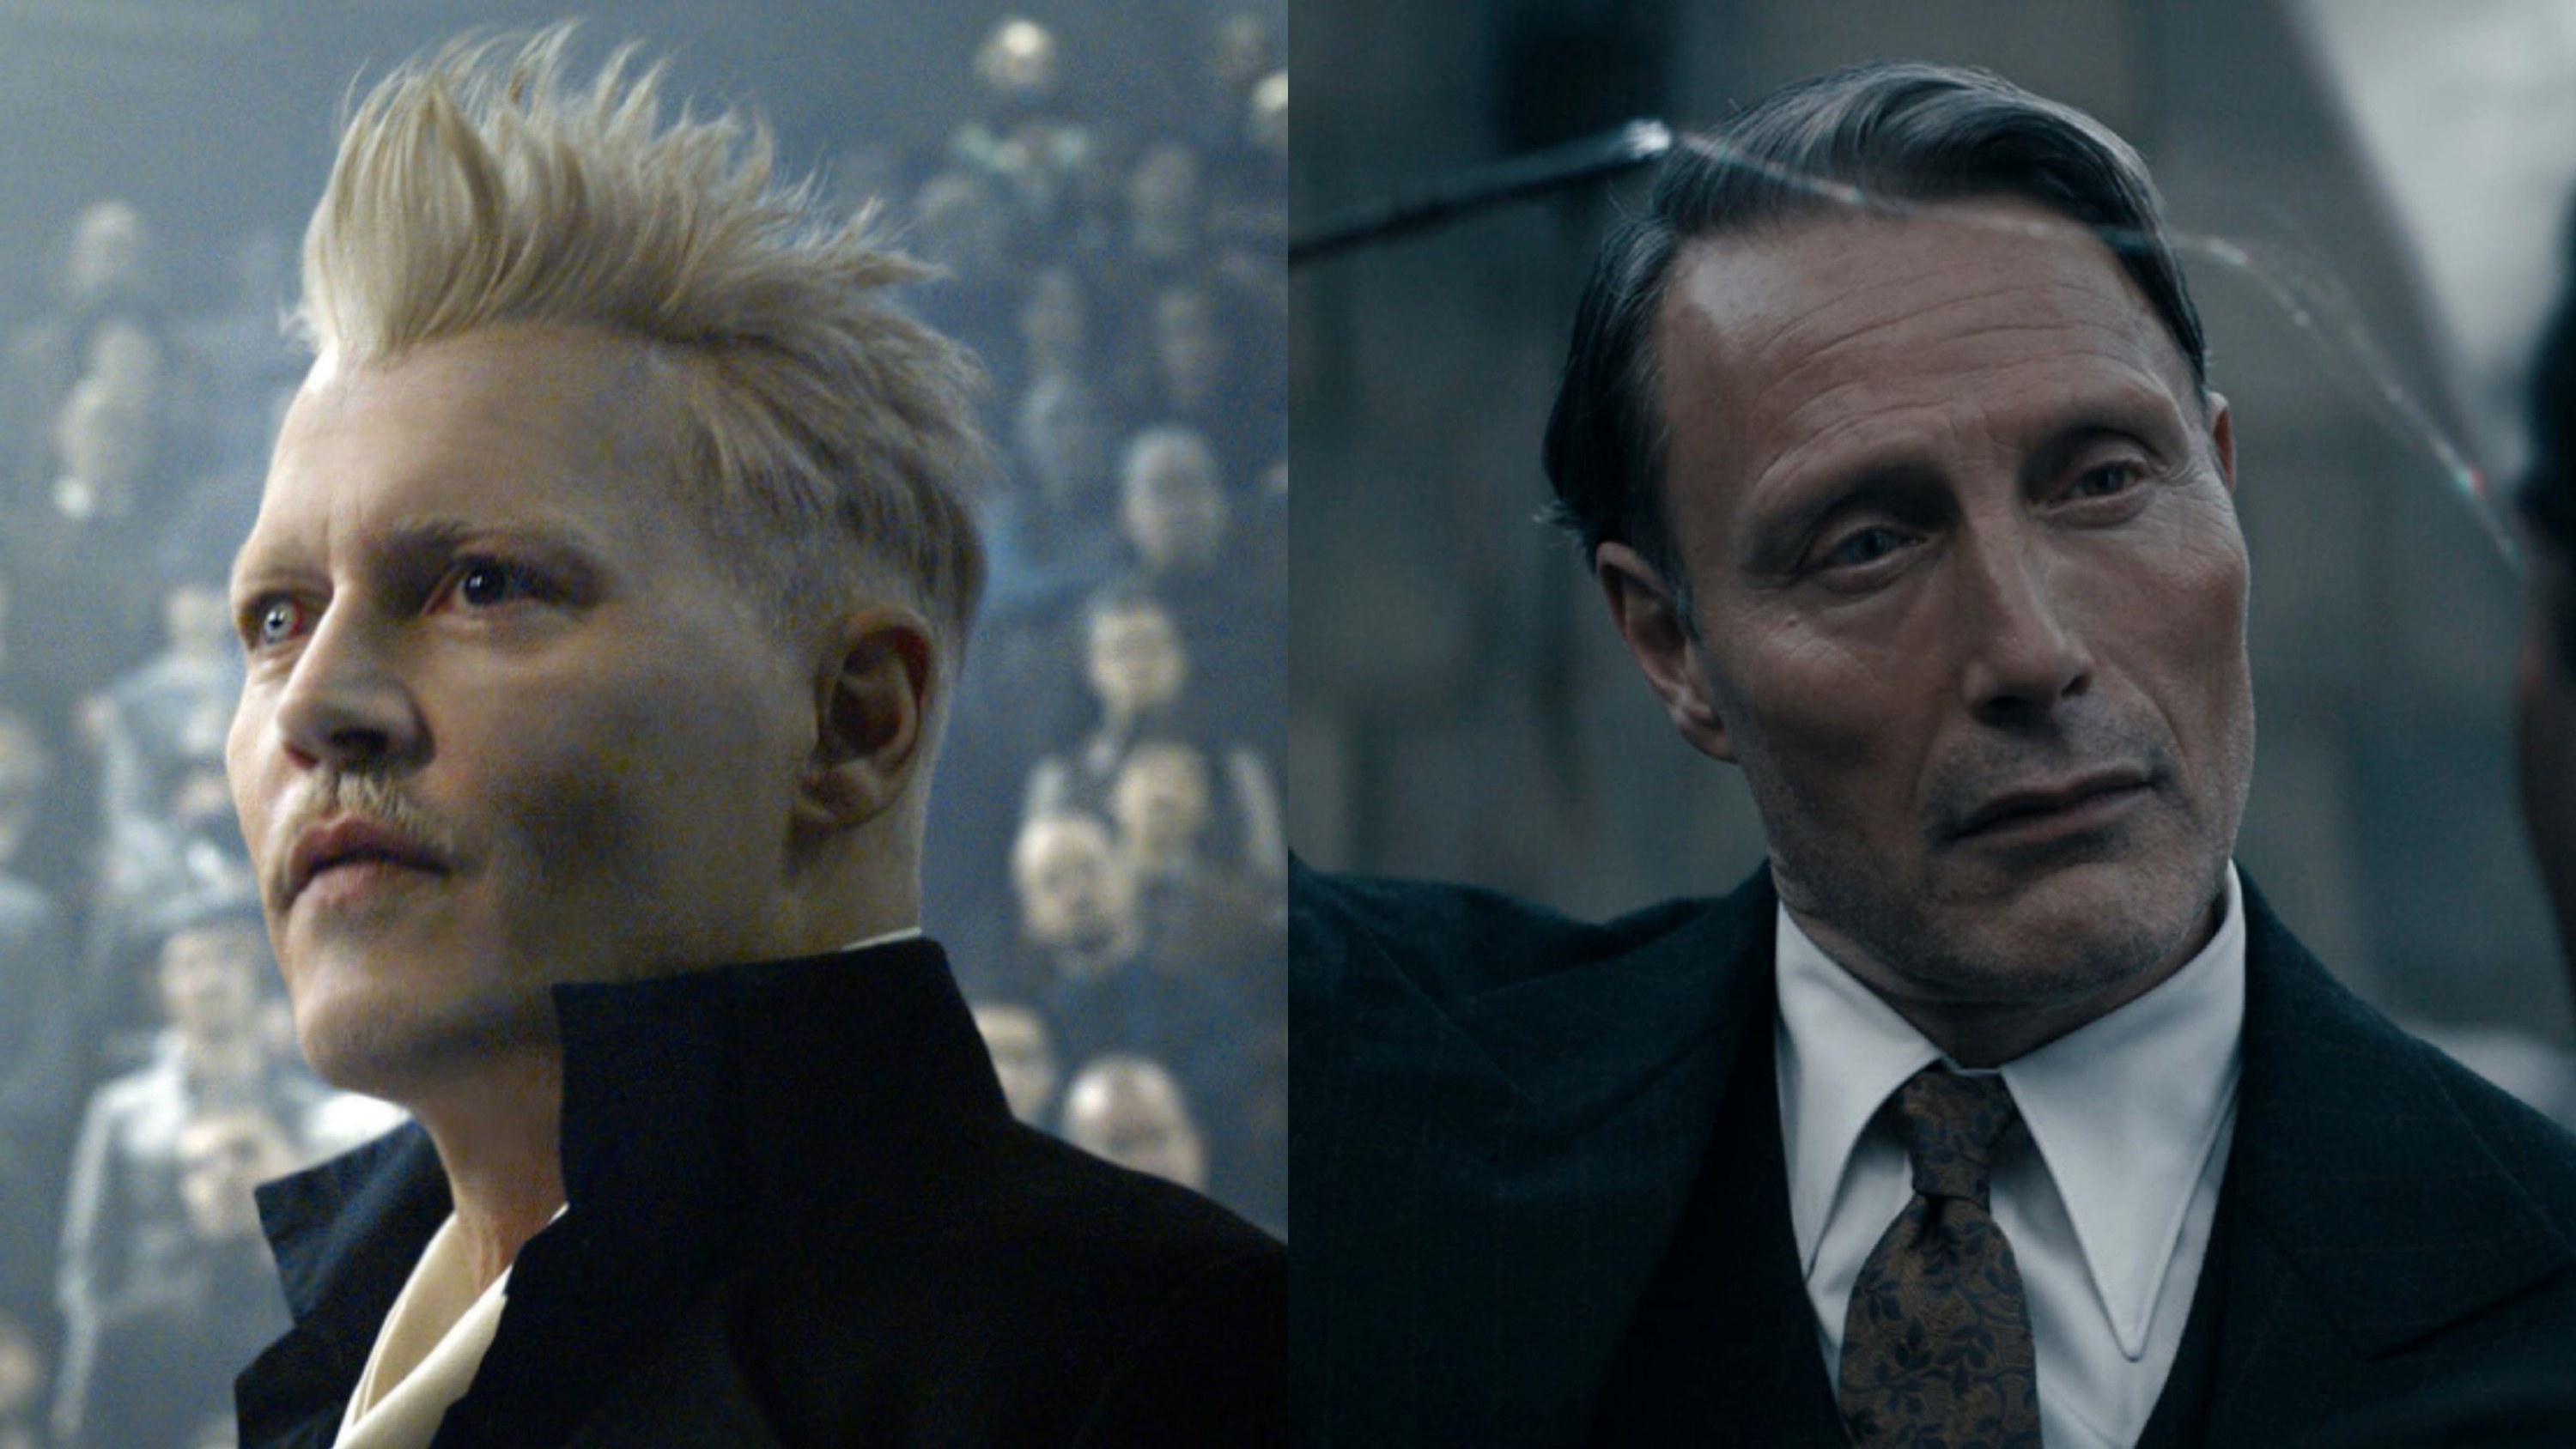 Johnny Depp vs. Mads Mikkelsen as Grindewald